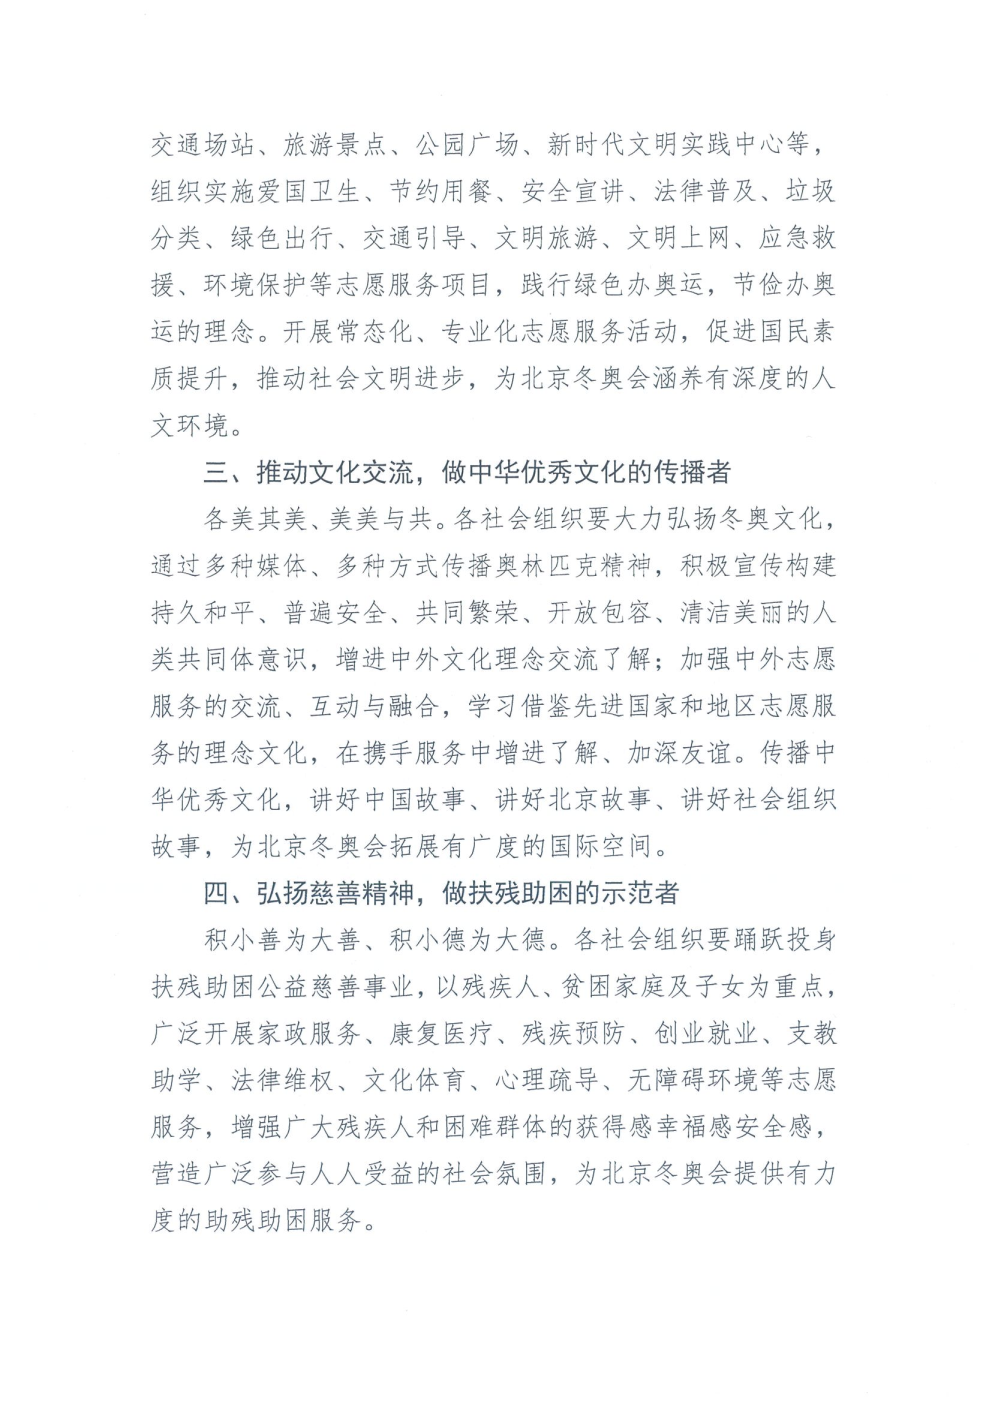 北京市社会组织助力北京冬奥会倡议书_Page2.png